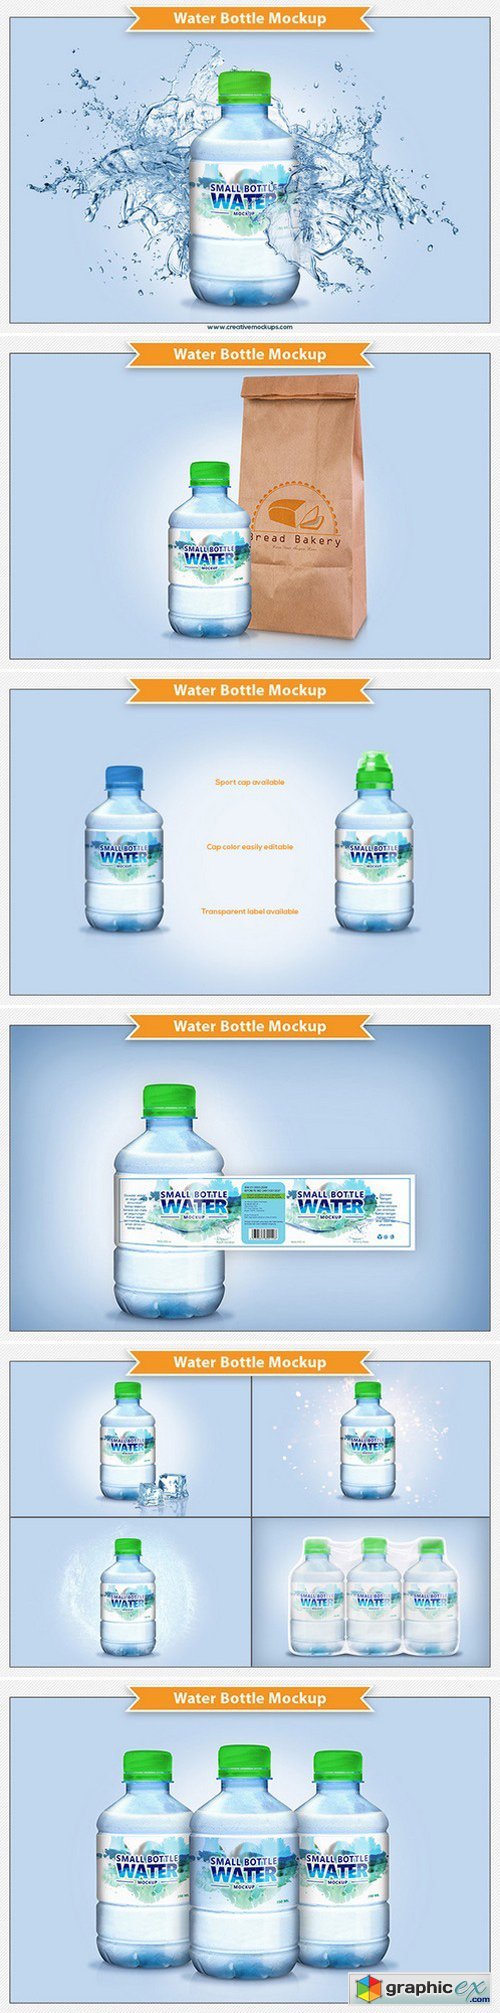 Water Bottle Mockup 762012